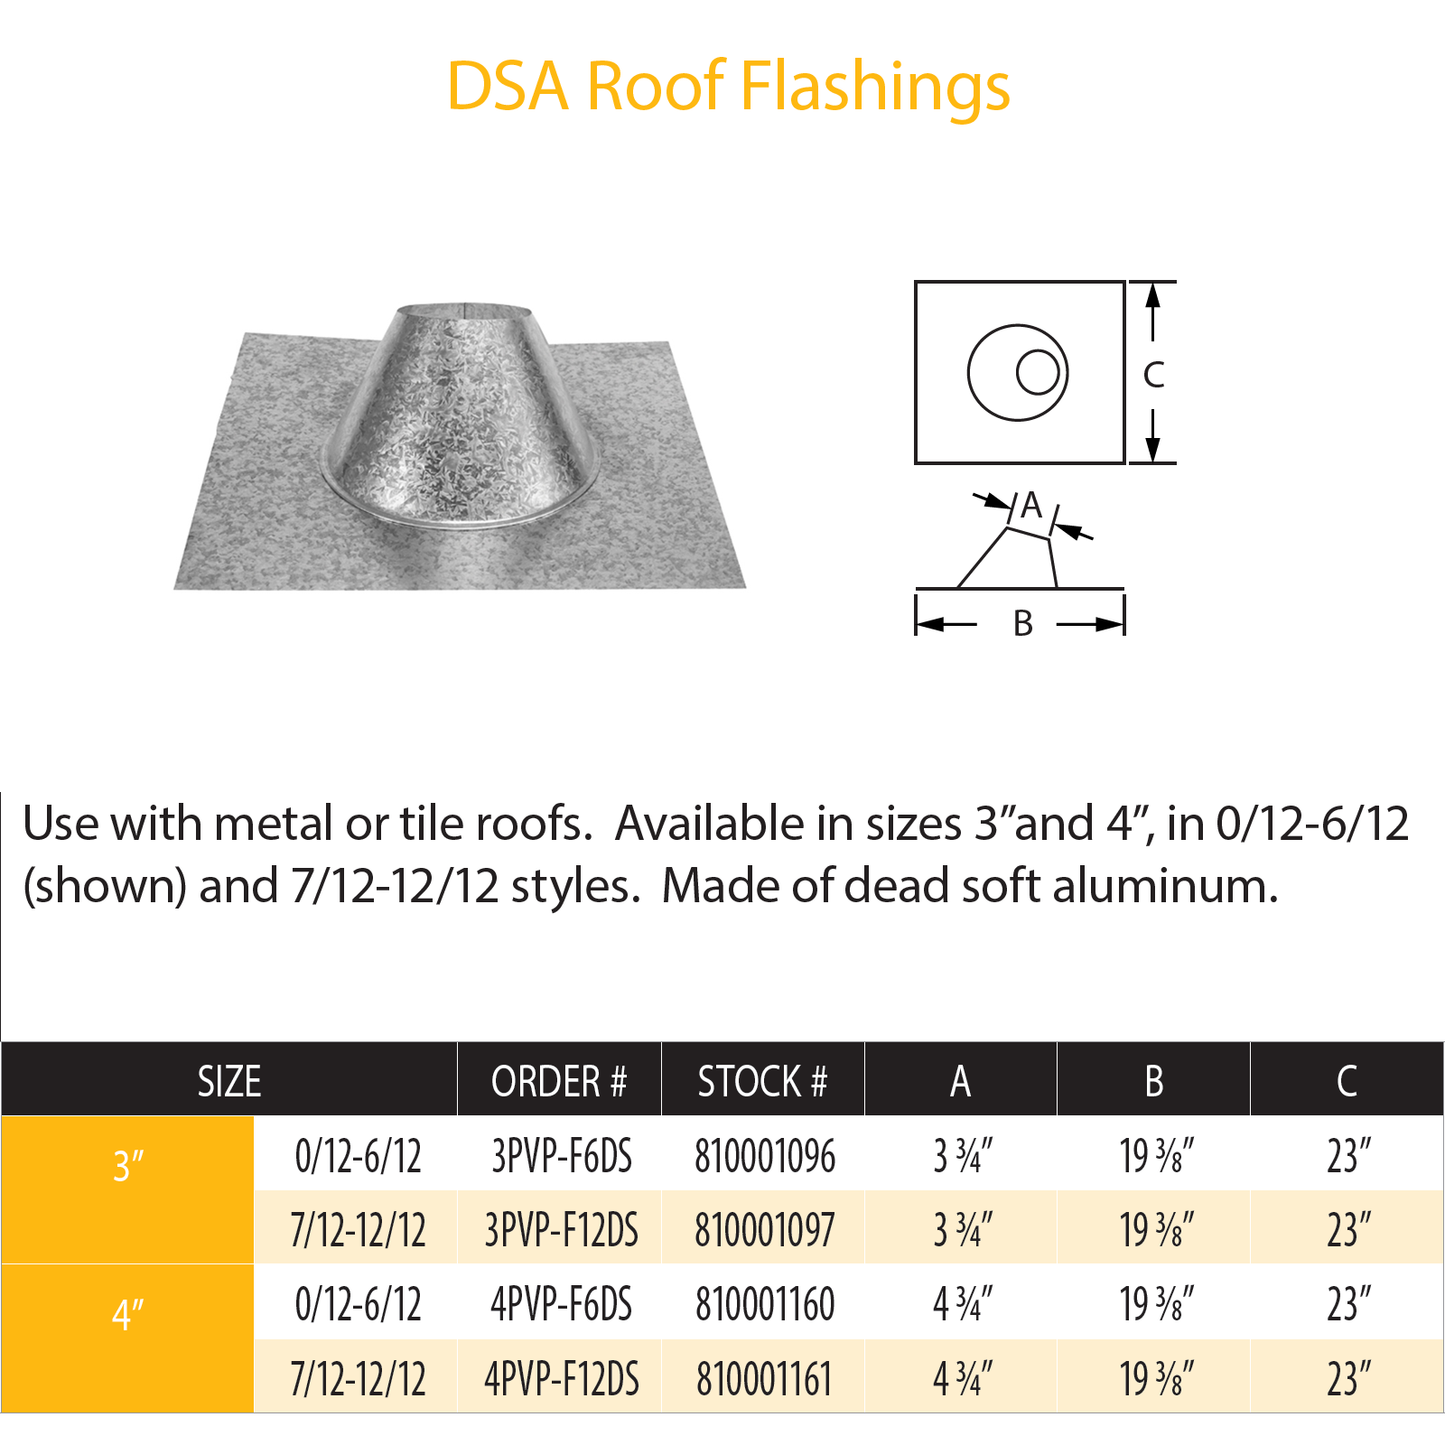 DuraVent Pellet Vent Pro DSA Roof Flashing 7/12 - 12/12 | 3PVP-F12DS